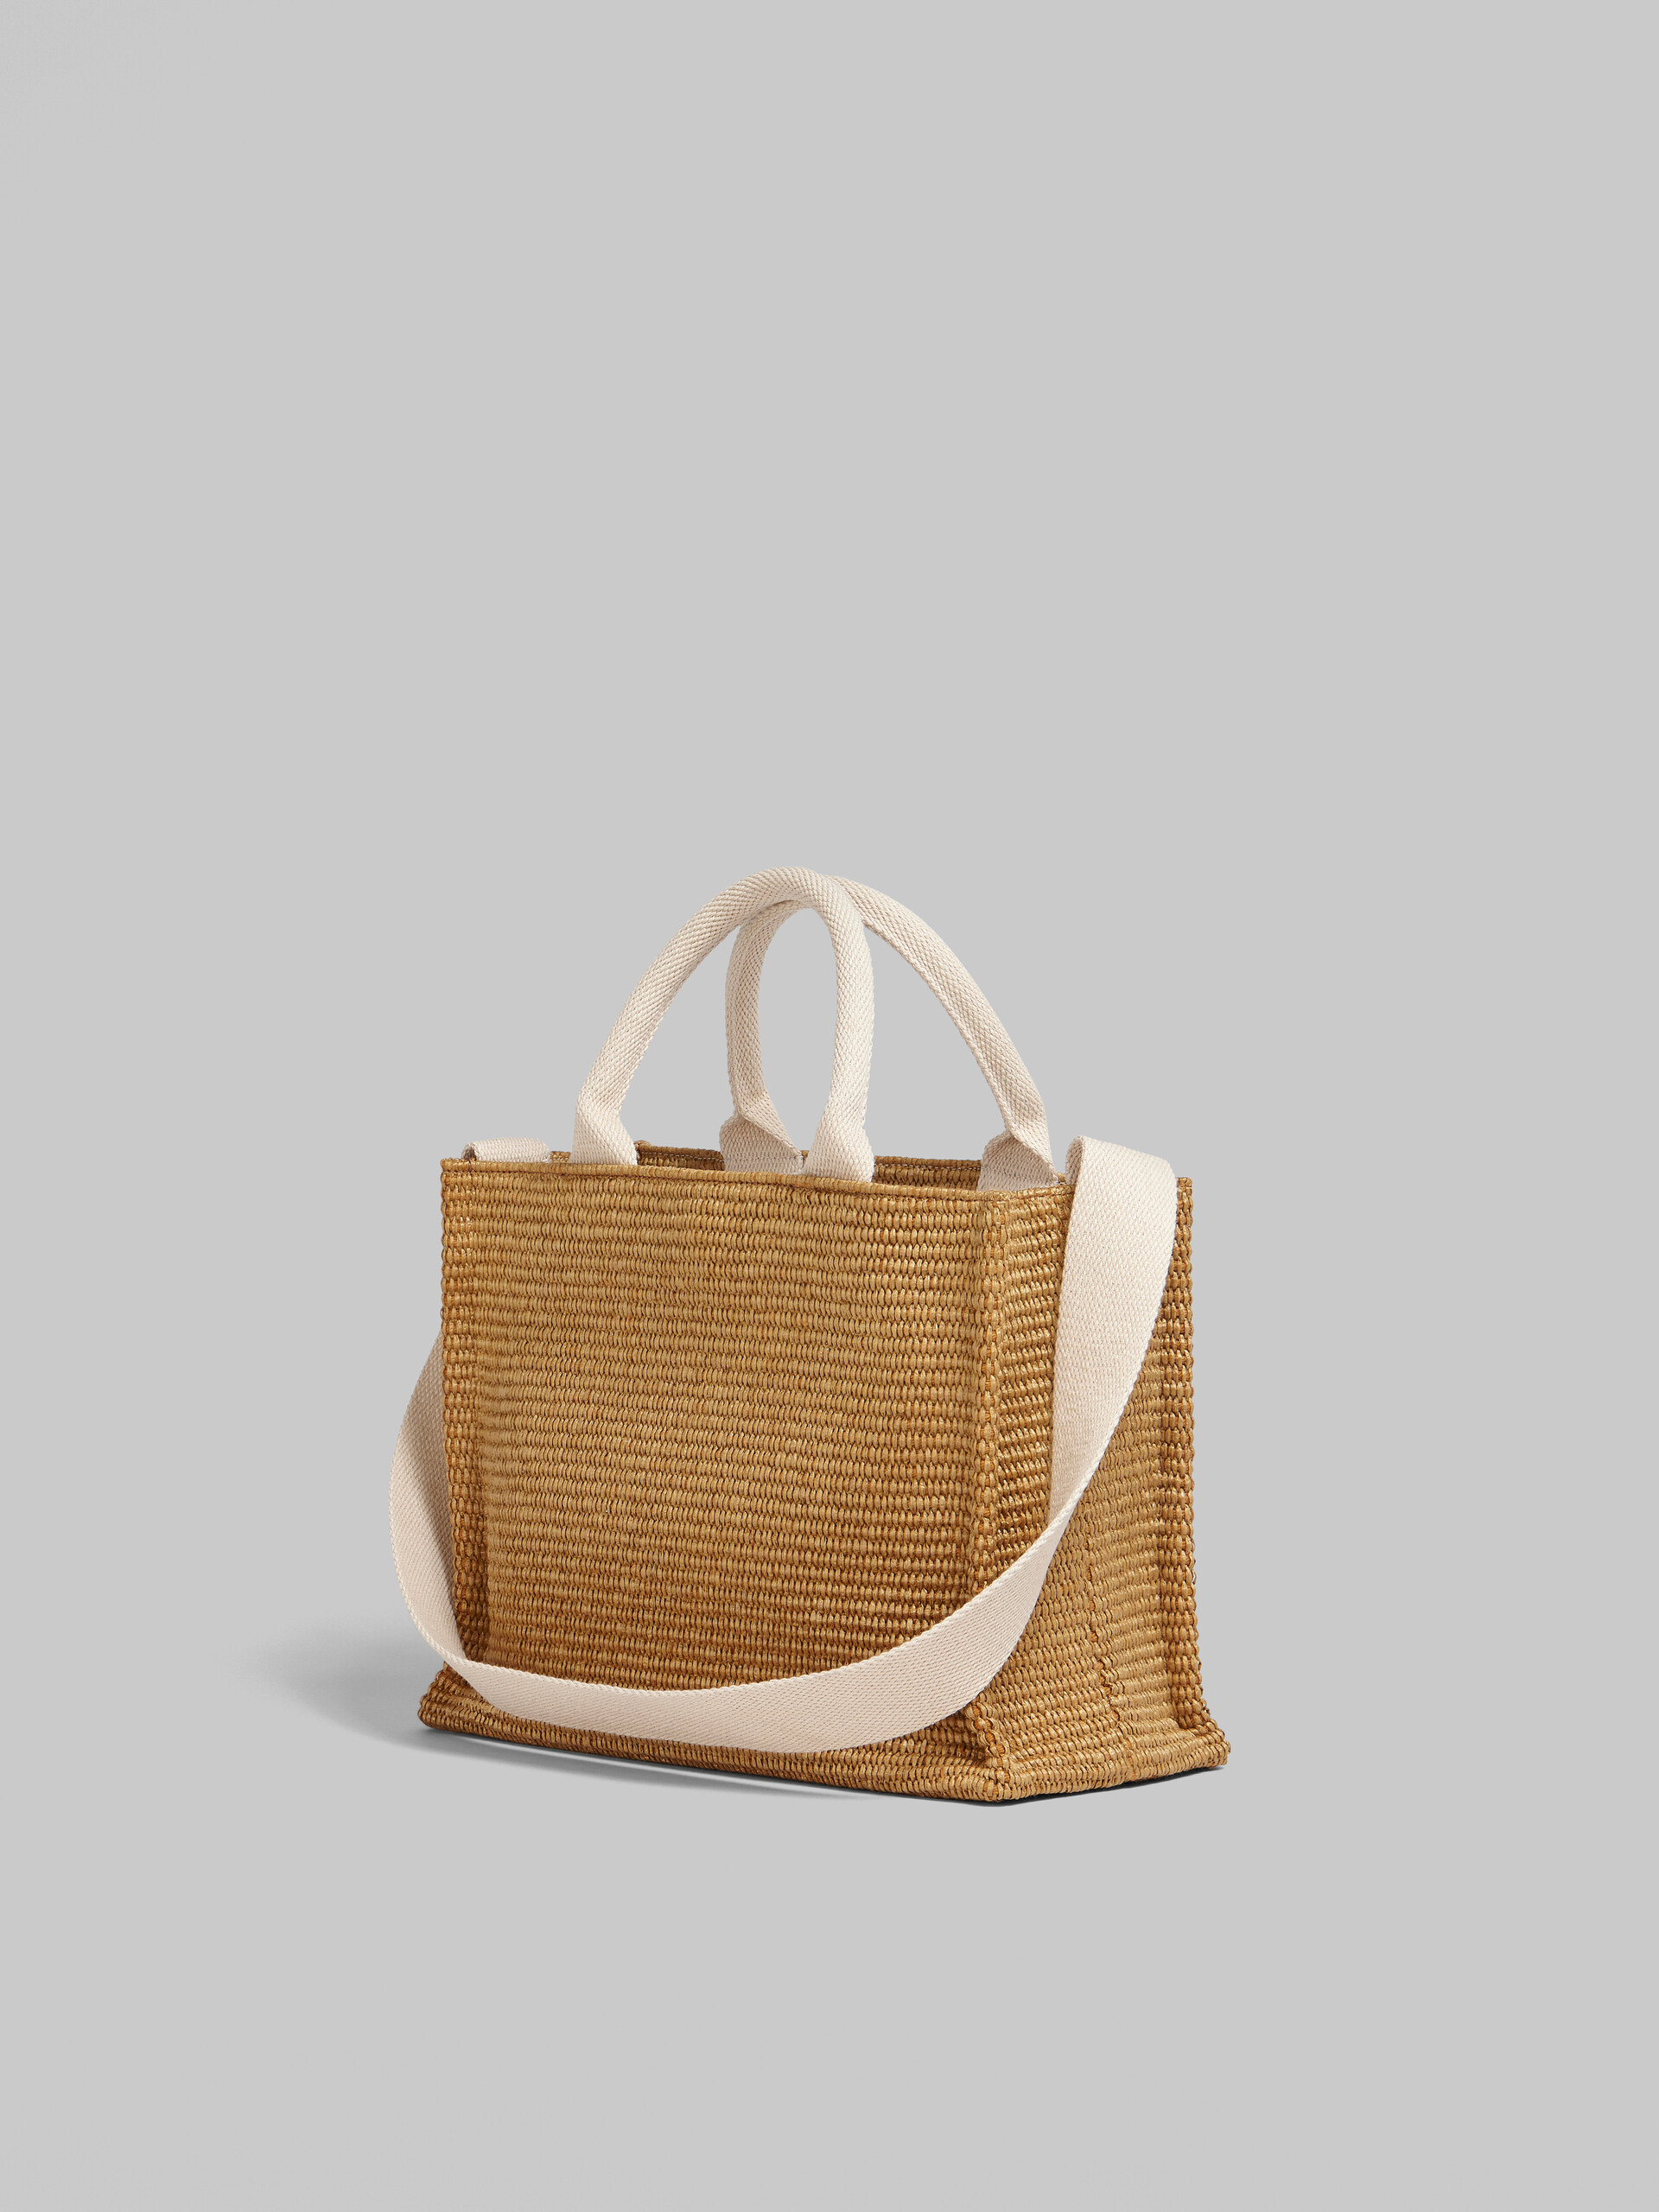 Tote Bag Piccola in rafia naturale - Borse shopping - Image 3